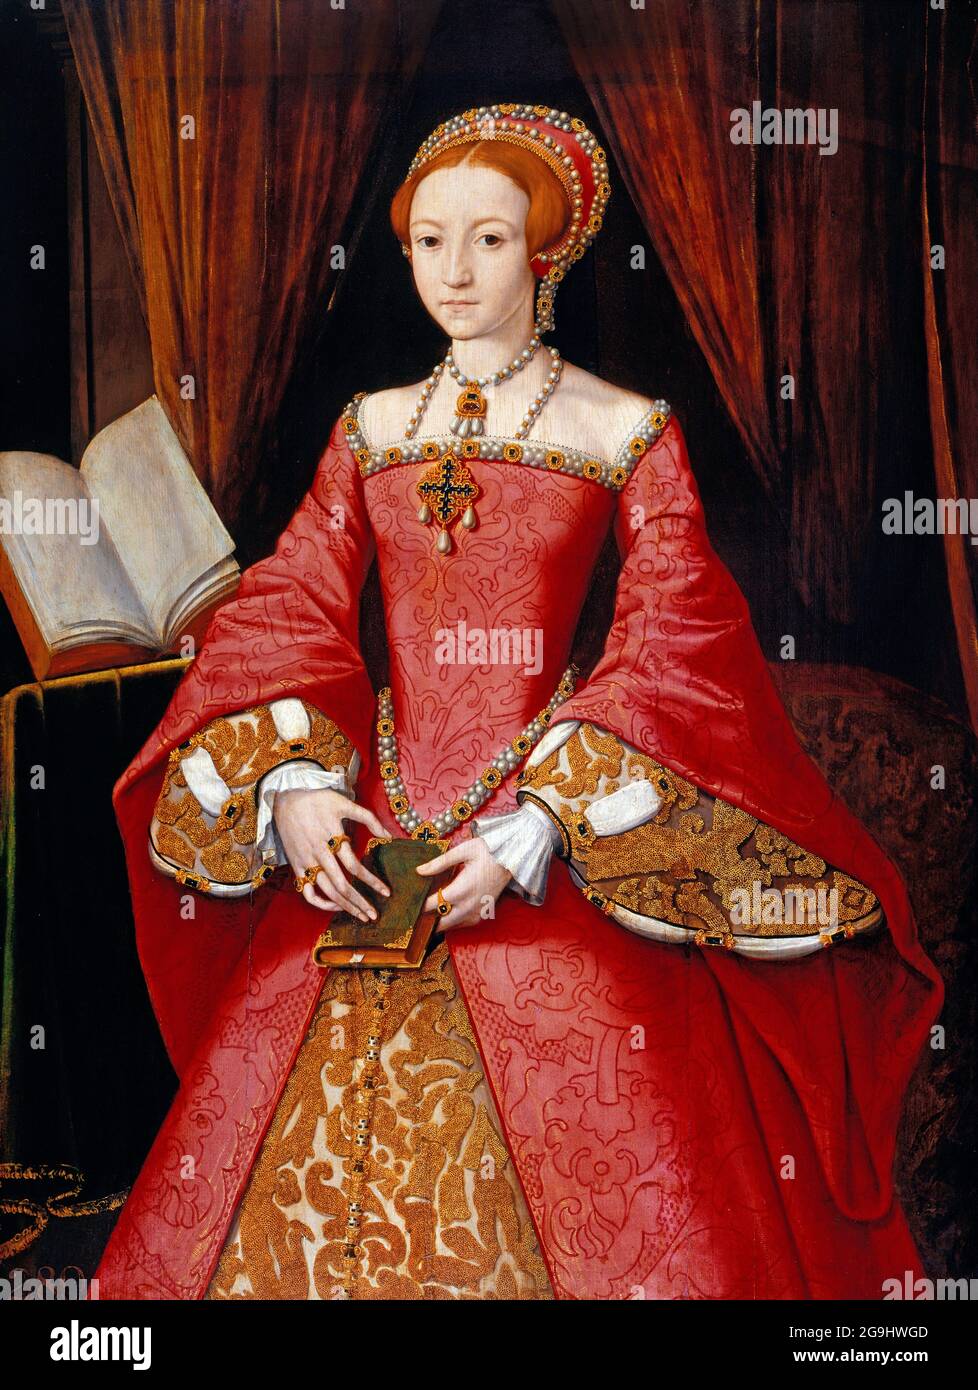 Elizabeth I. Porträt der zukünftigen Königin Elizabeth I. (1533-1603) als Prinzessin Elizabeth im Alter von 12 Jahren. Porträt von William Scrots, 1546/7 Stockfoto